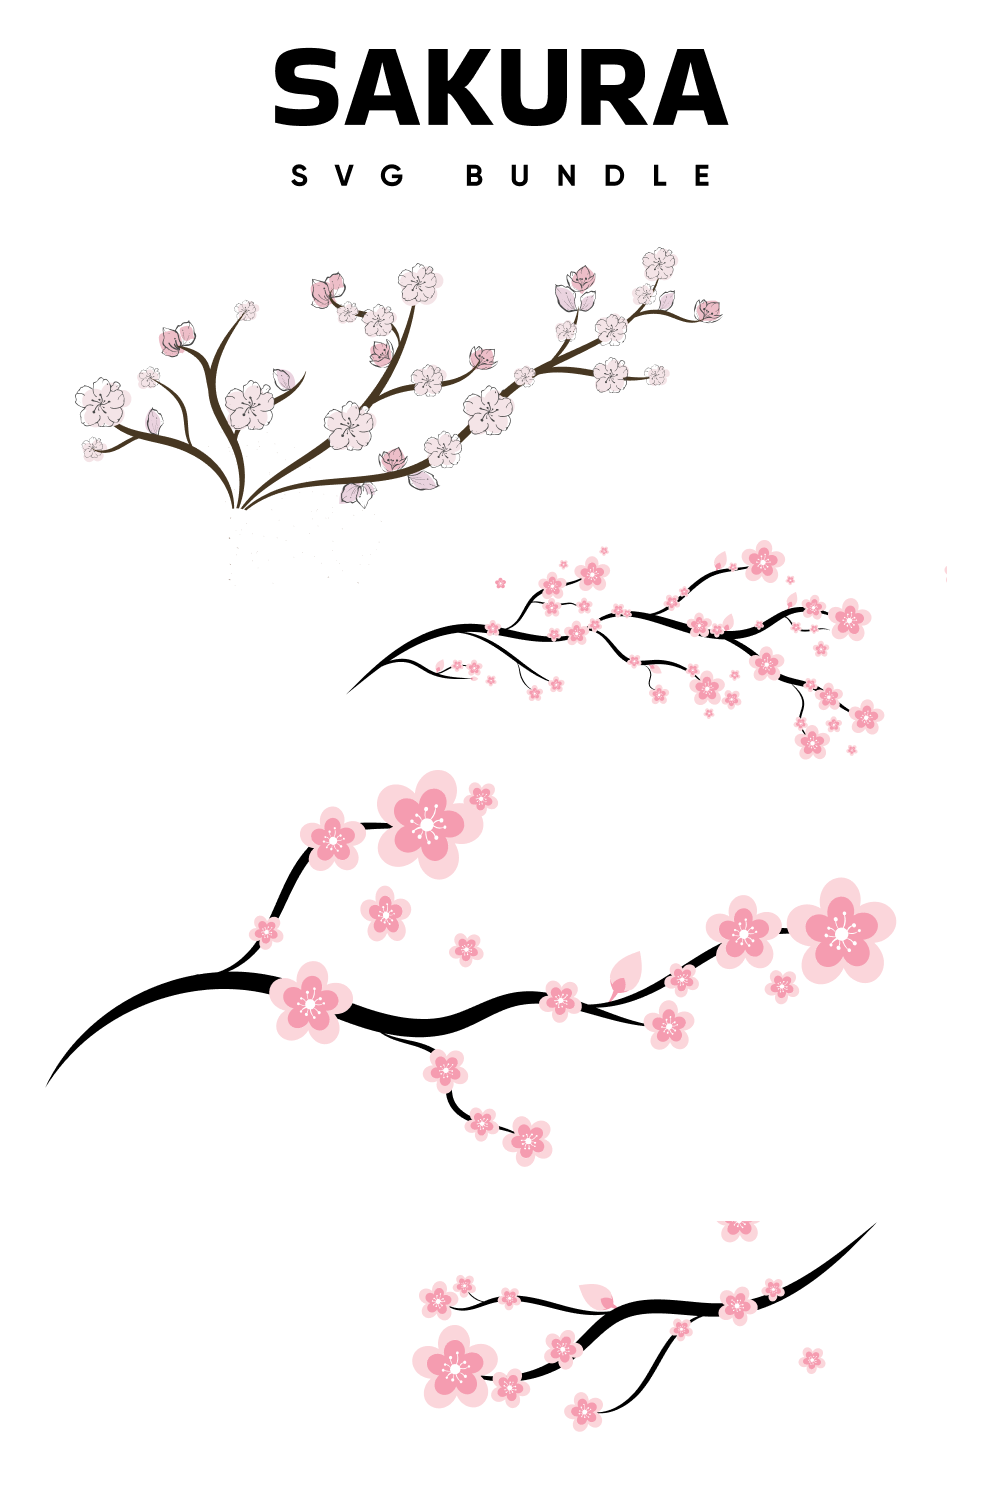 Sakura Svg - Pinterest.